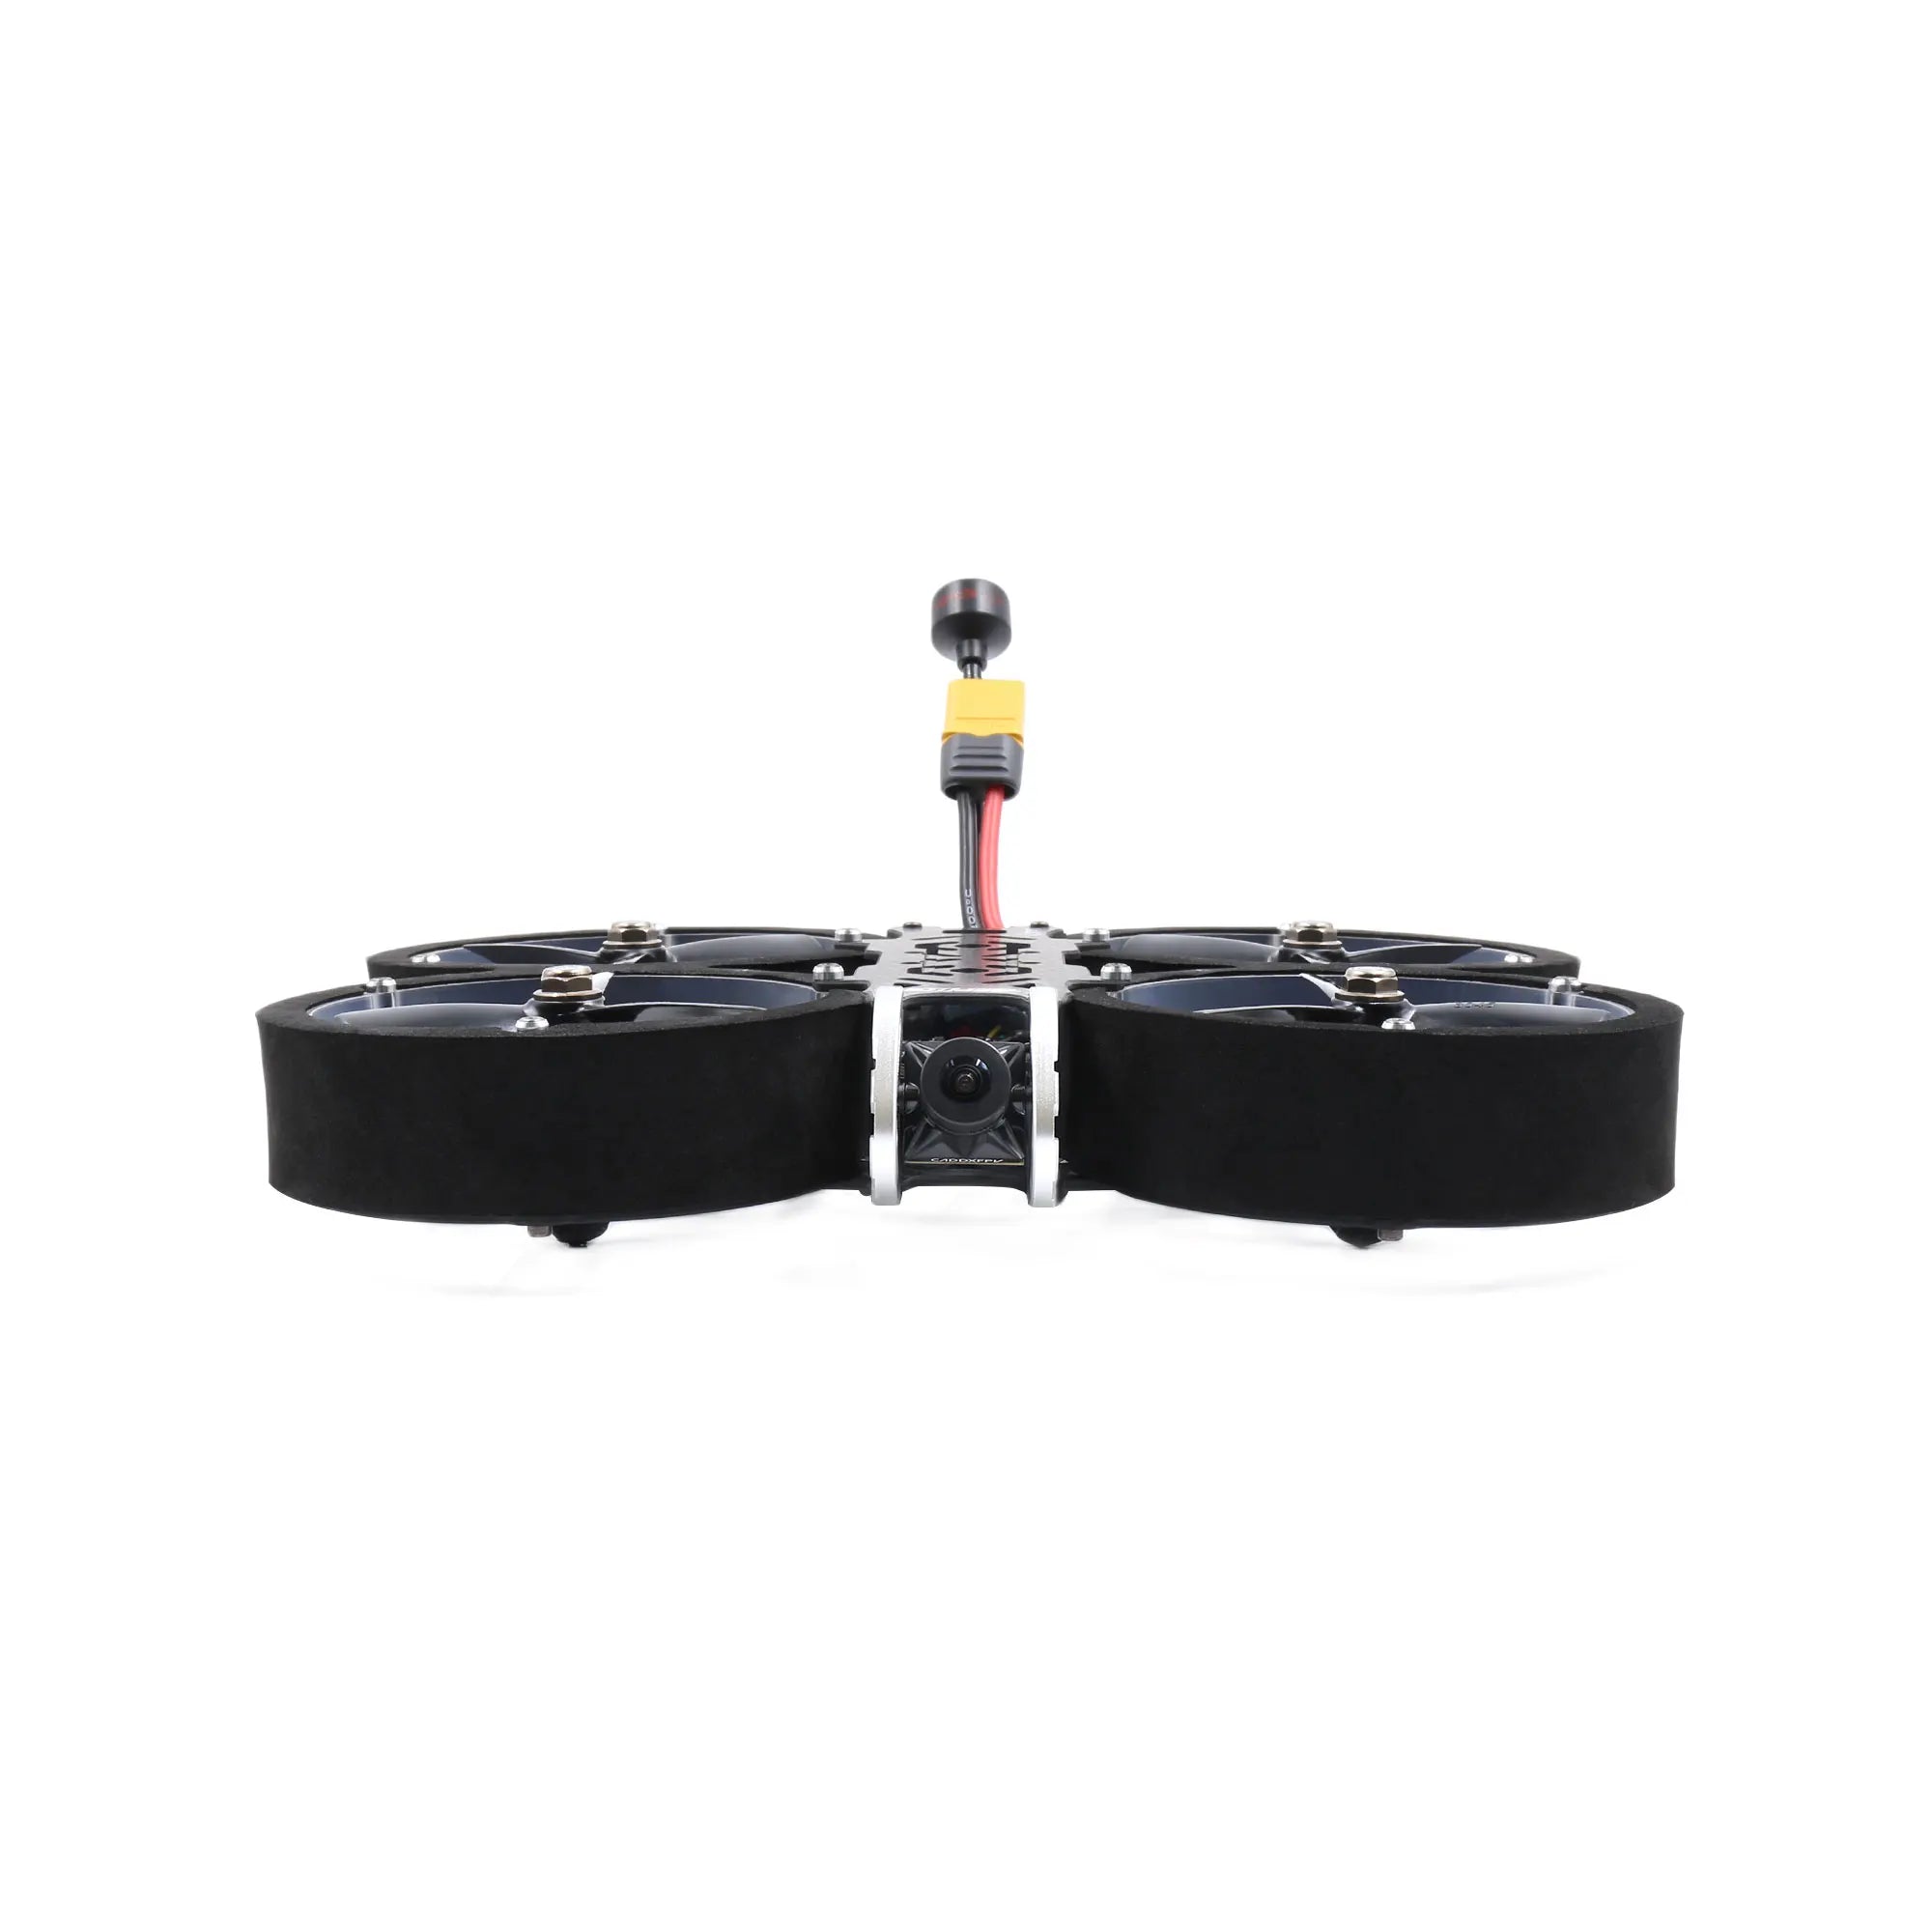 GEPRC Crown HD Cinewhoop FPV Drone, When selecting the GEPRC Crown HD Cinewhoop, consider the following factors: 1.